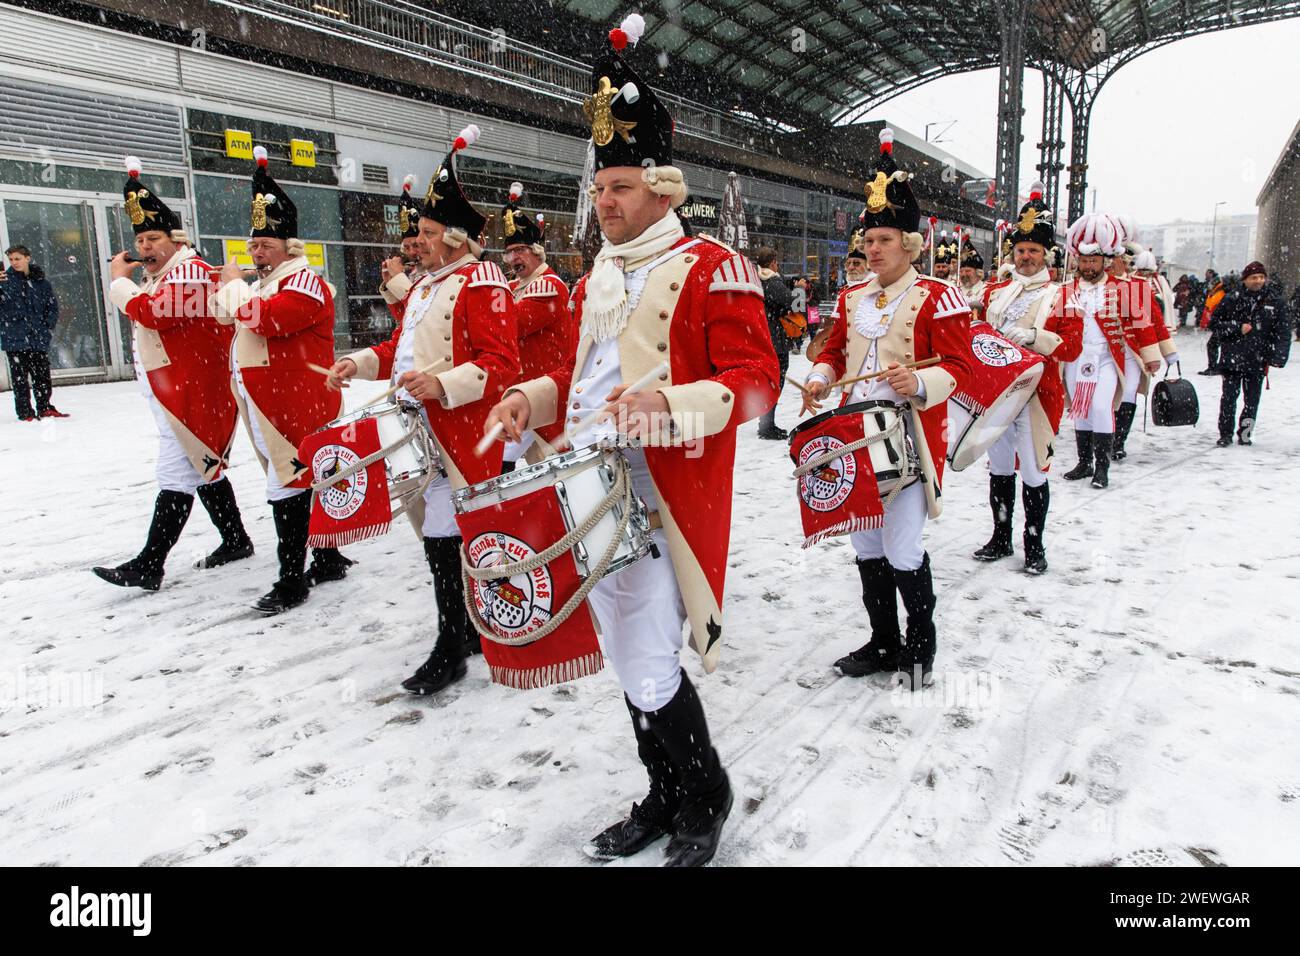 Banda di marcia della Rote Funken (una società di carnevale) su Breslauer Platz di fronte alla stazione centrale, inverno, neve, Colonia, Germania. Spielmannszu Foto Stock